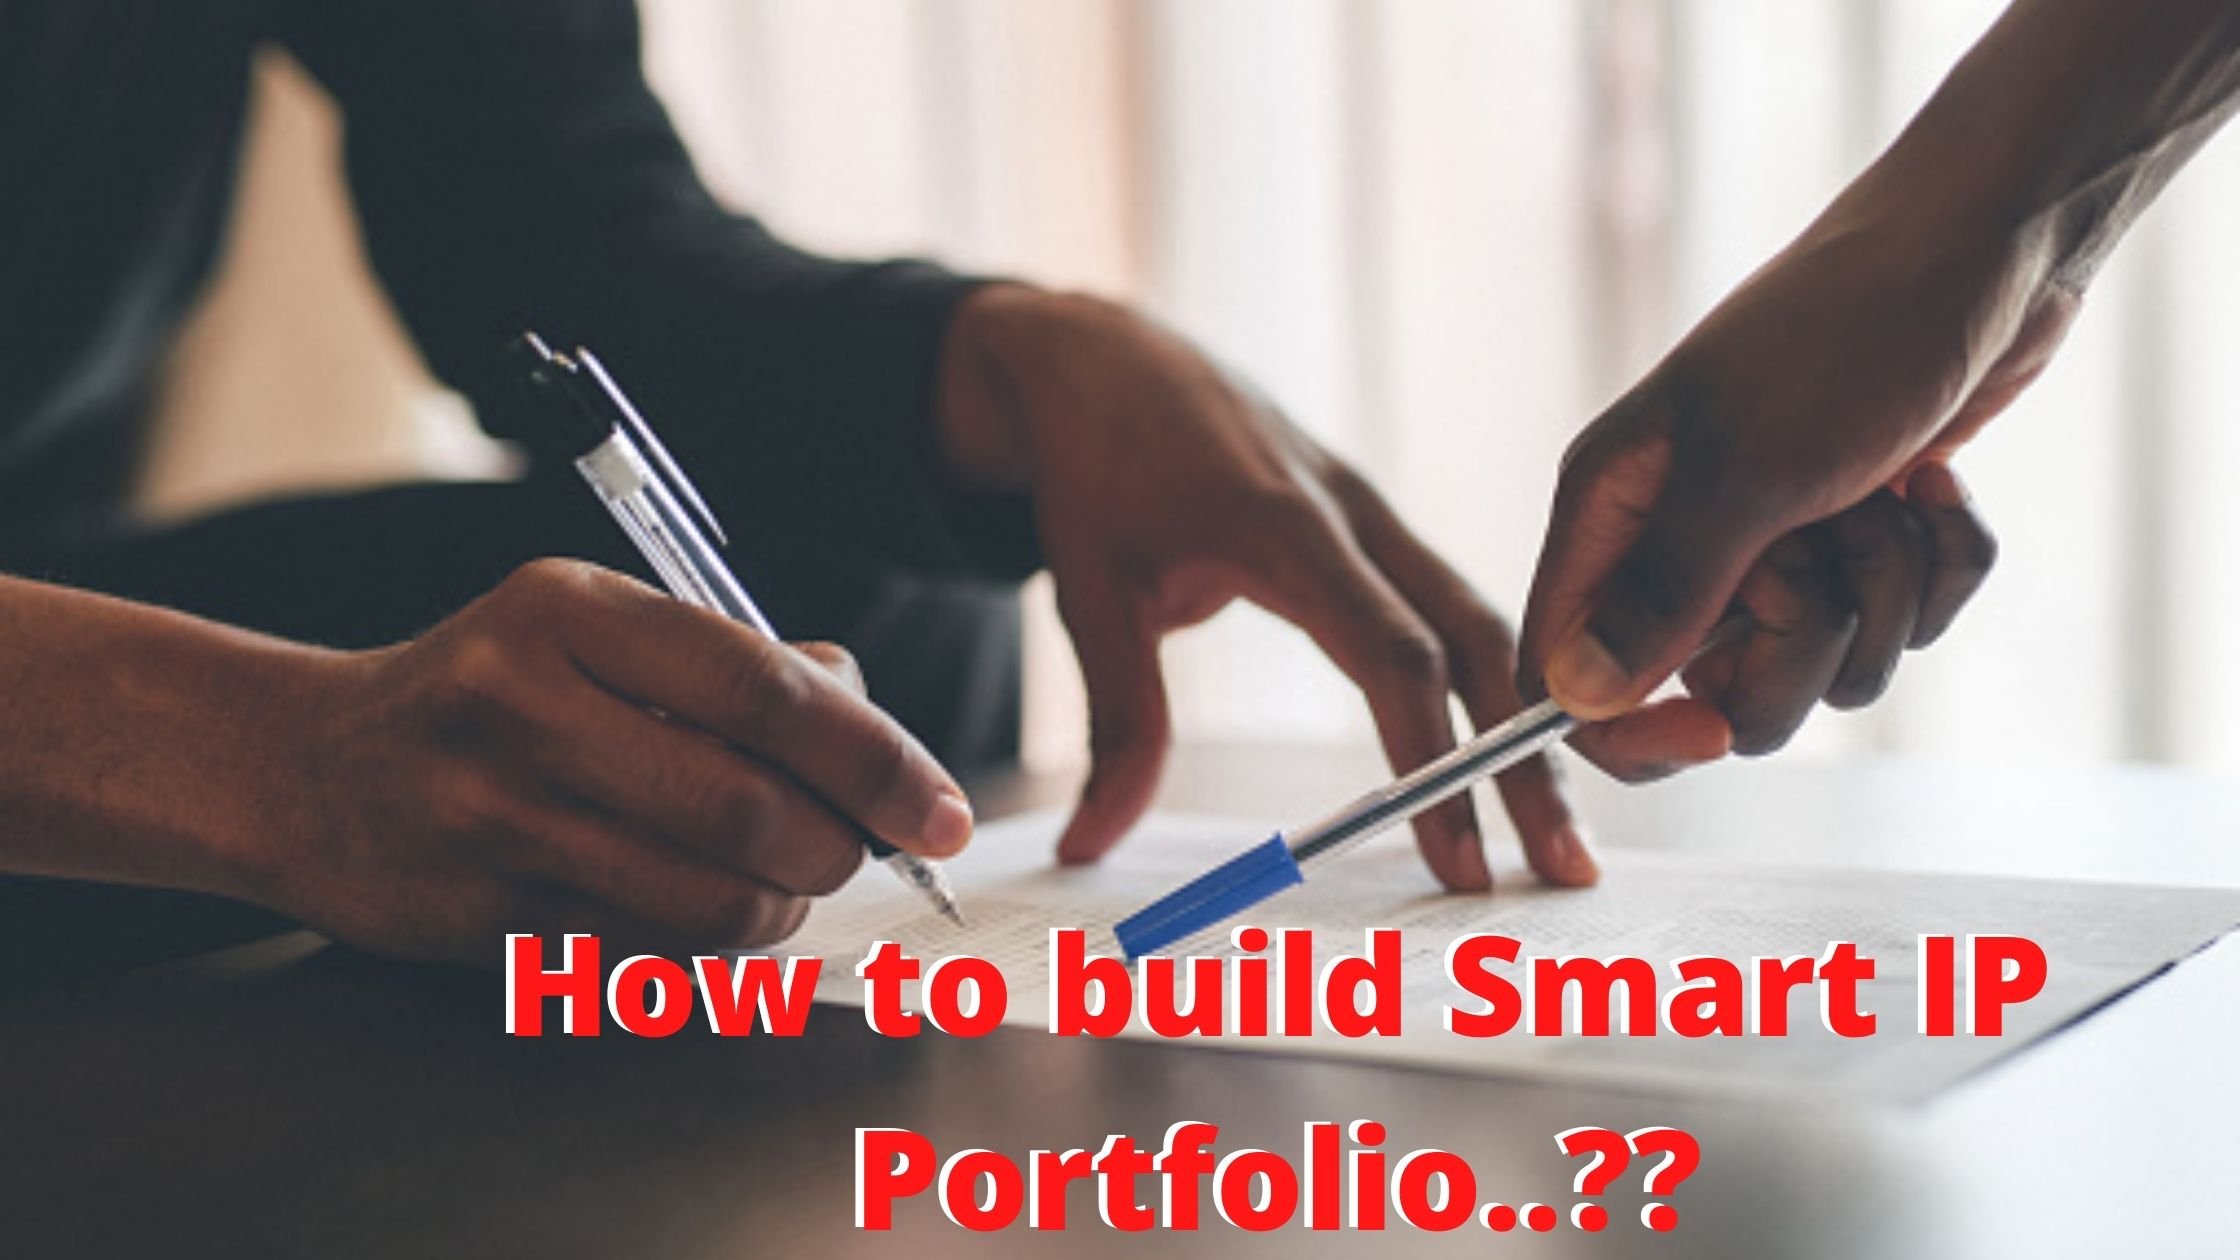 Building a Smart IP Portfolio